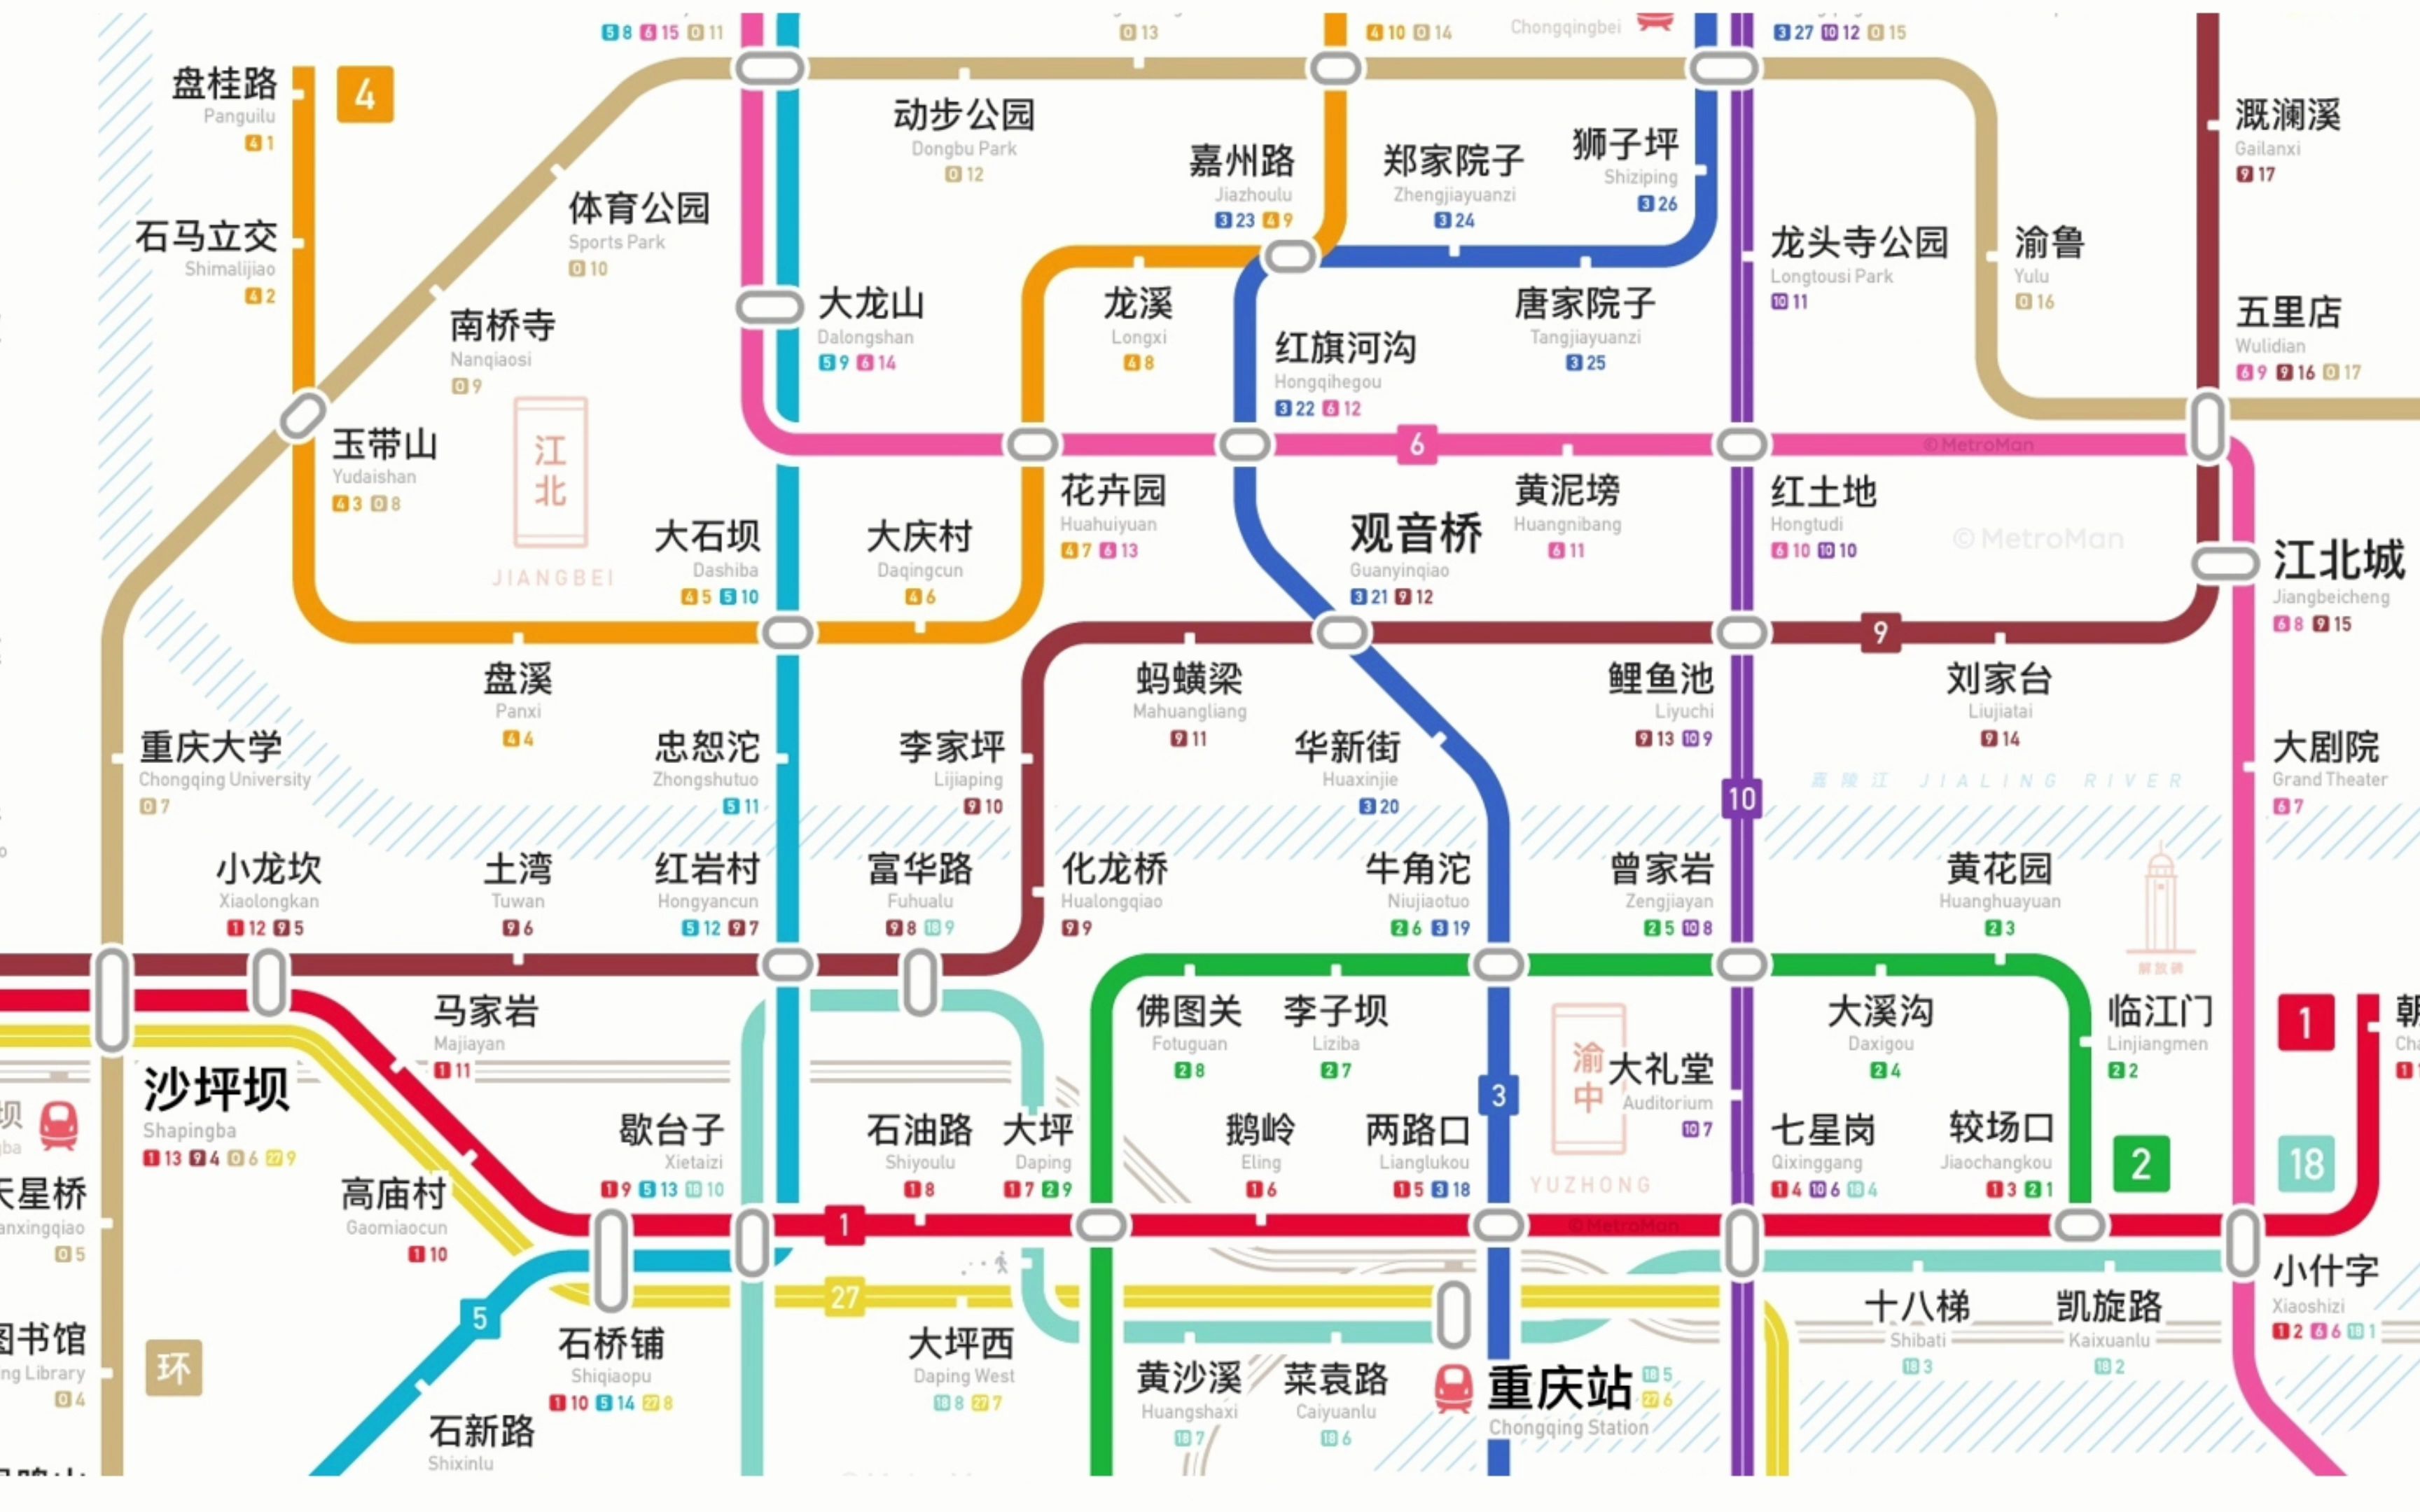 重庆地铁清晰远景规划图2027 